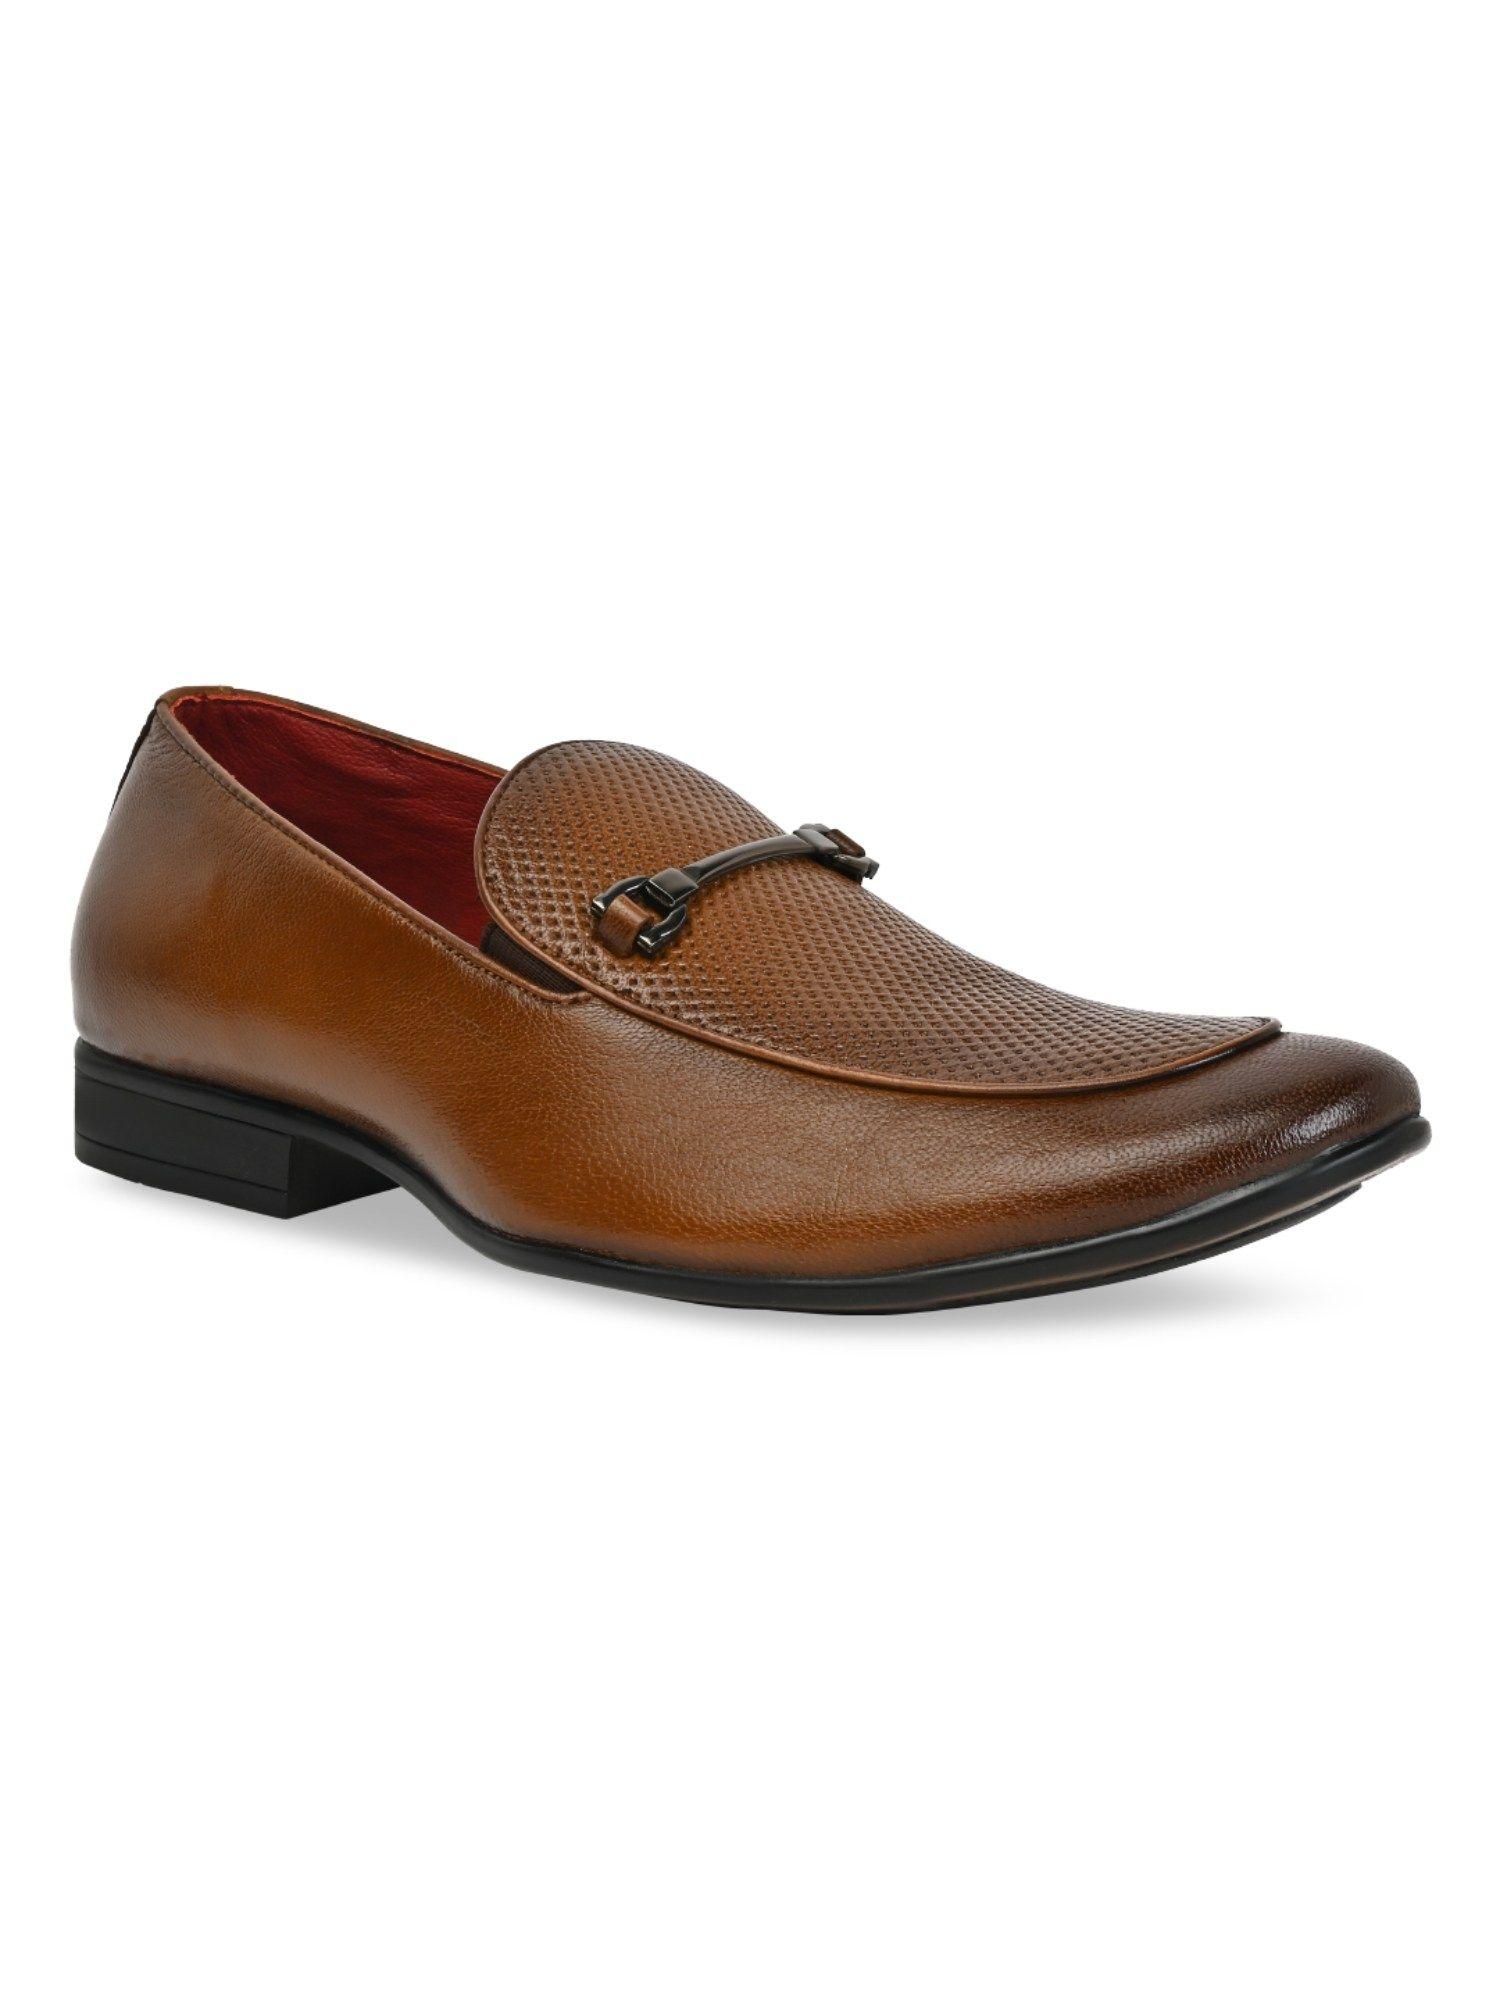 tan-men-leather-laser-cut-formal-slip-on-loafers